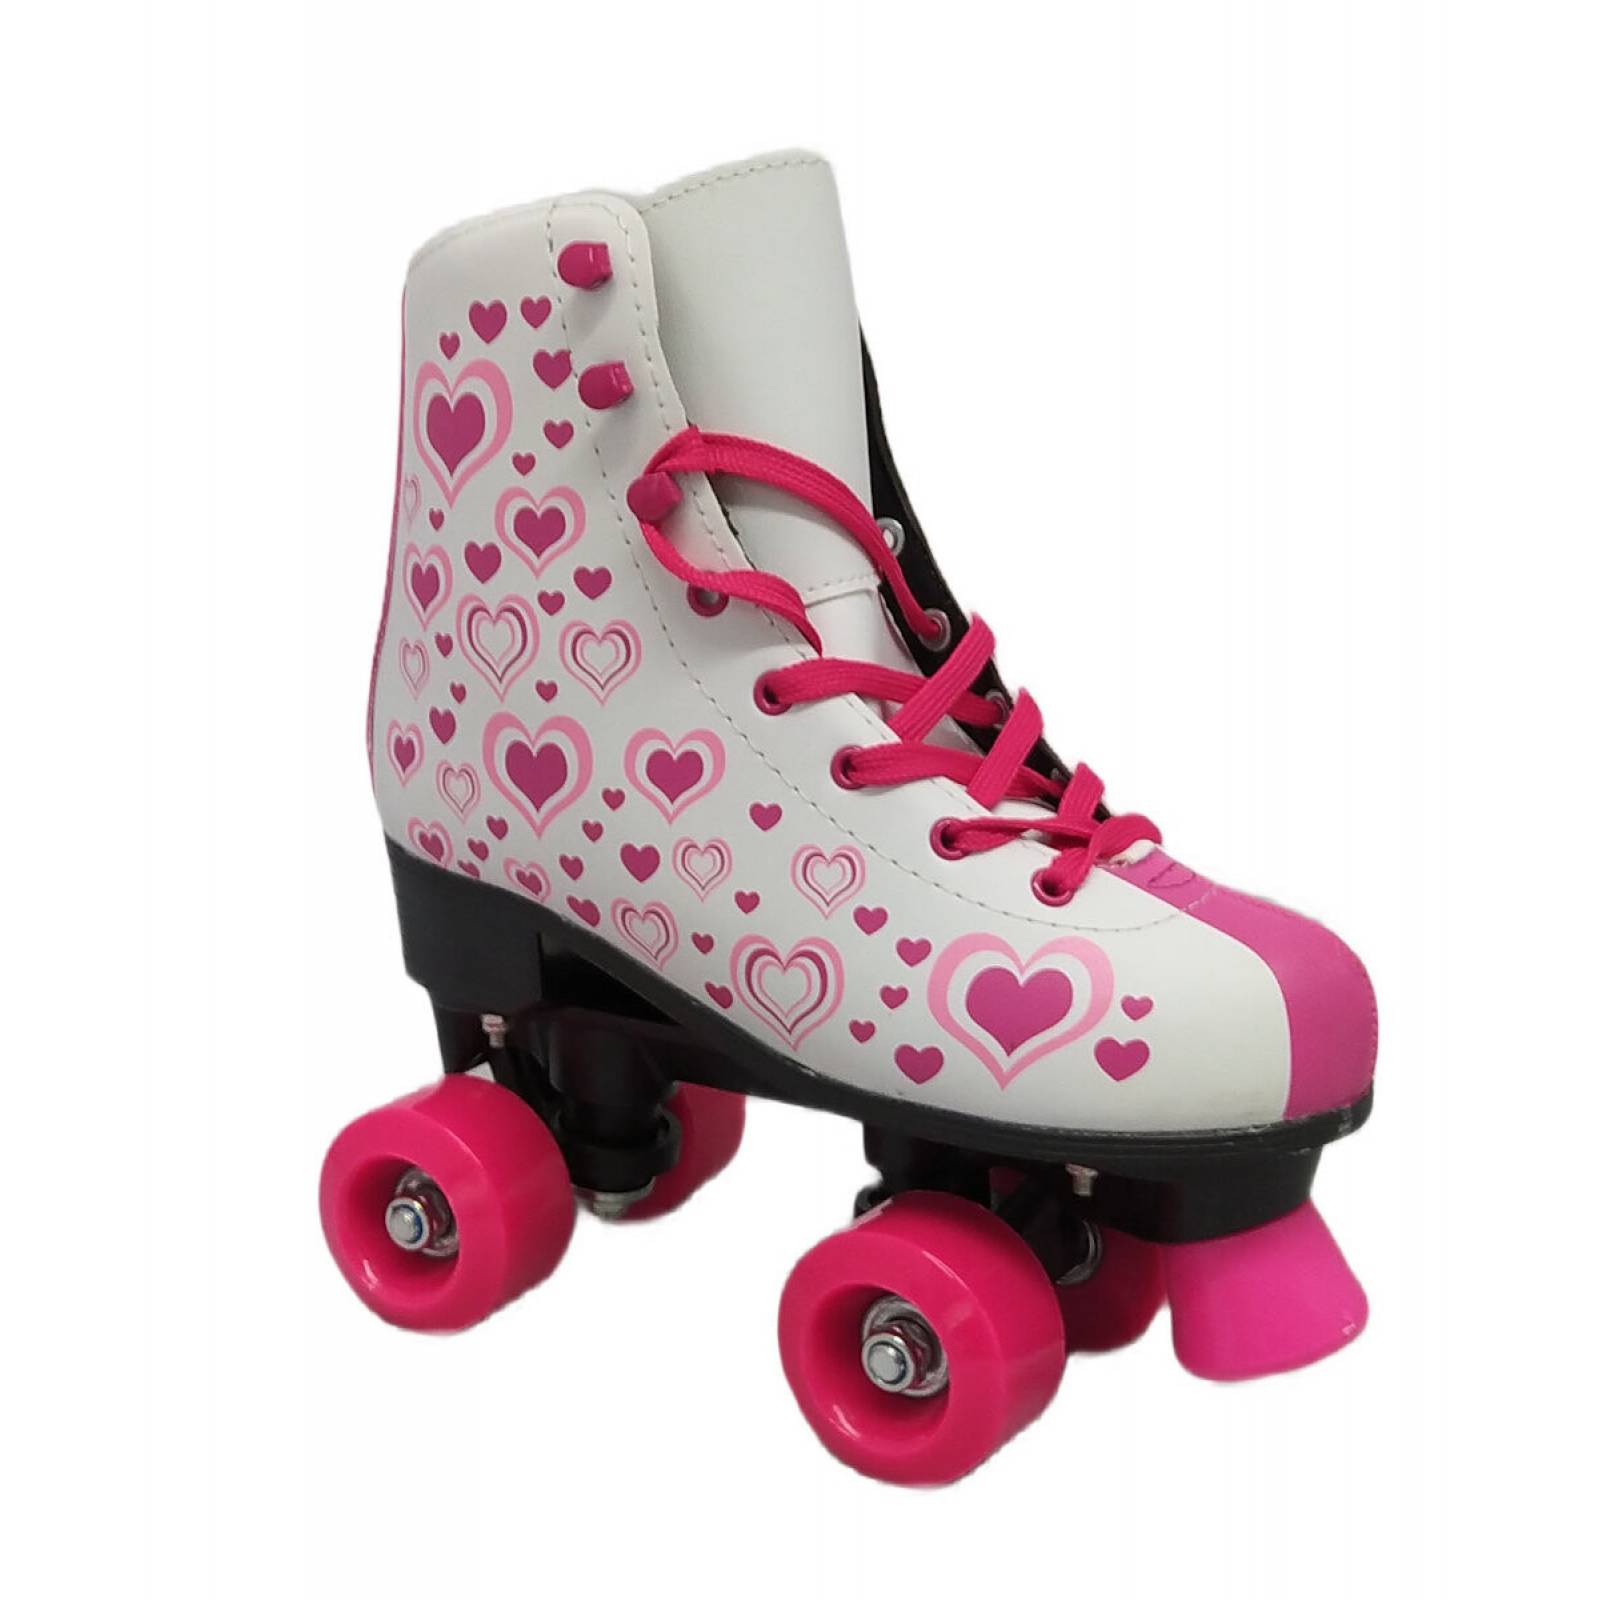 Patines Infantiles Roller Skate Retro Niñas 4 Ruedas Lineas Rosa 35-36e